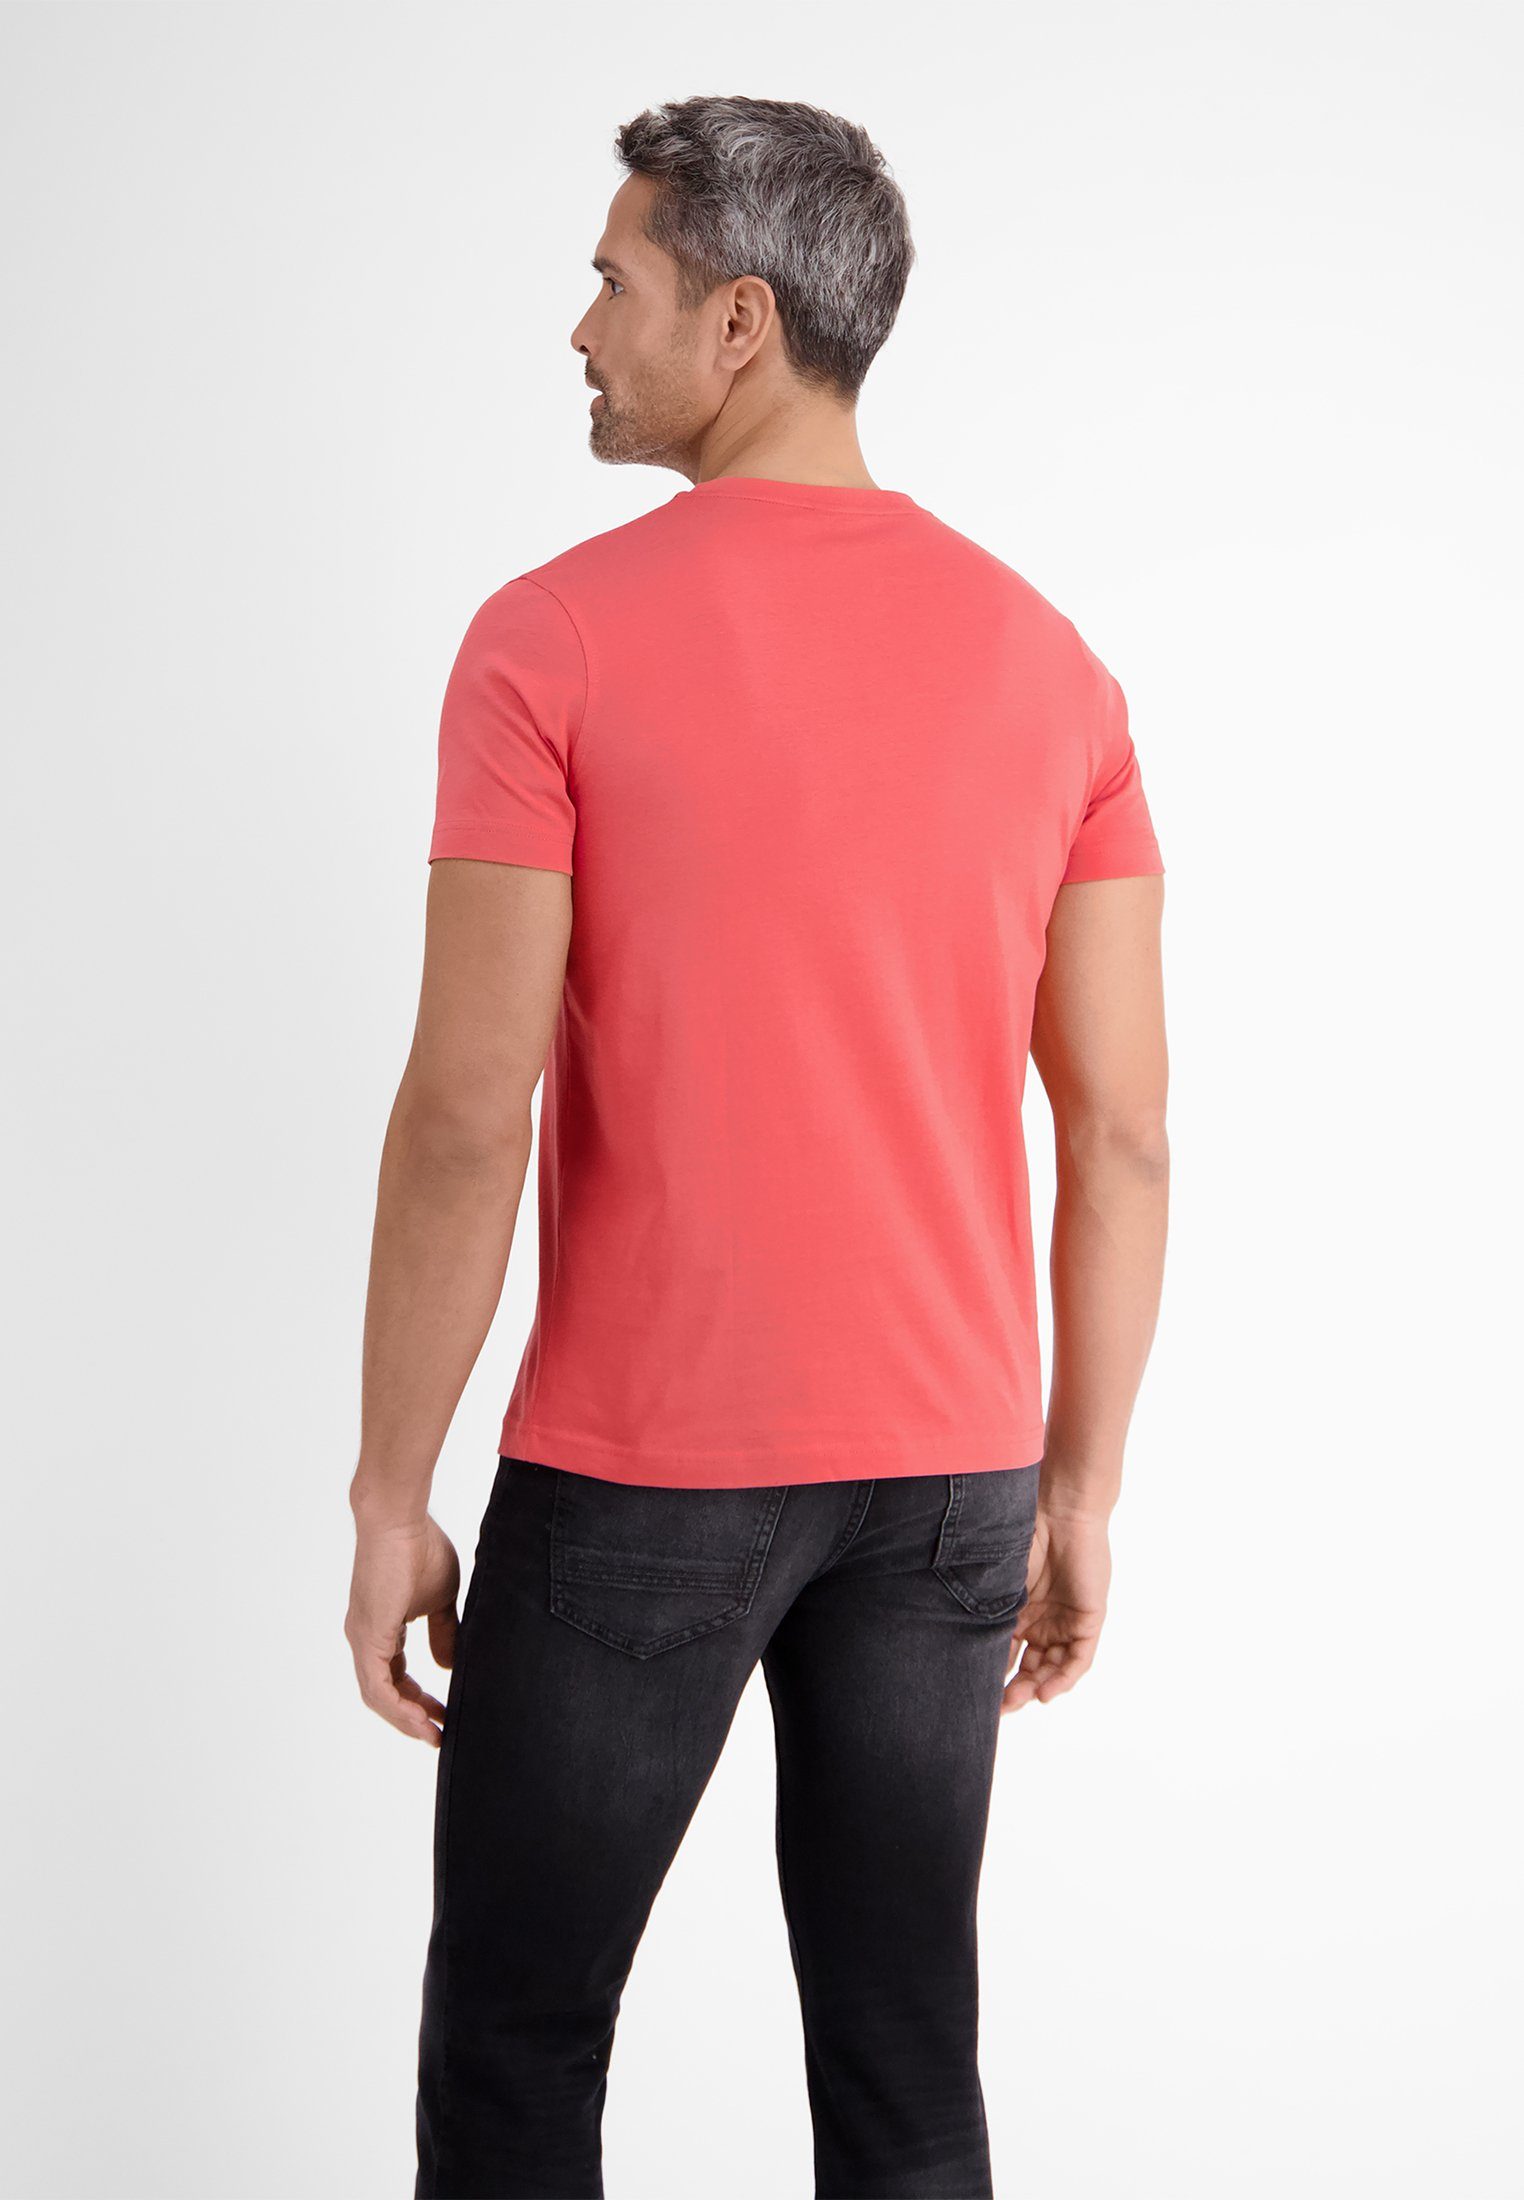 LERROS T-Shirt LERROS Basic T-Shirt RED vielen in Farben HIBISCUS